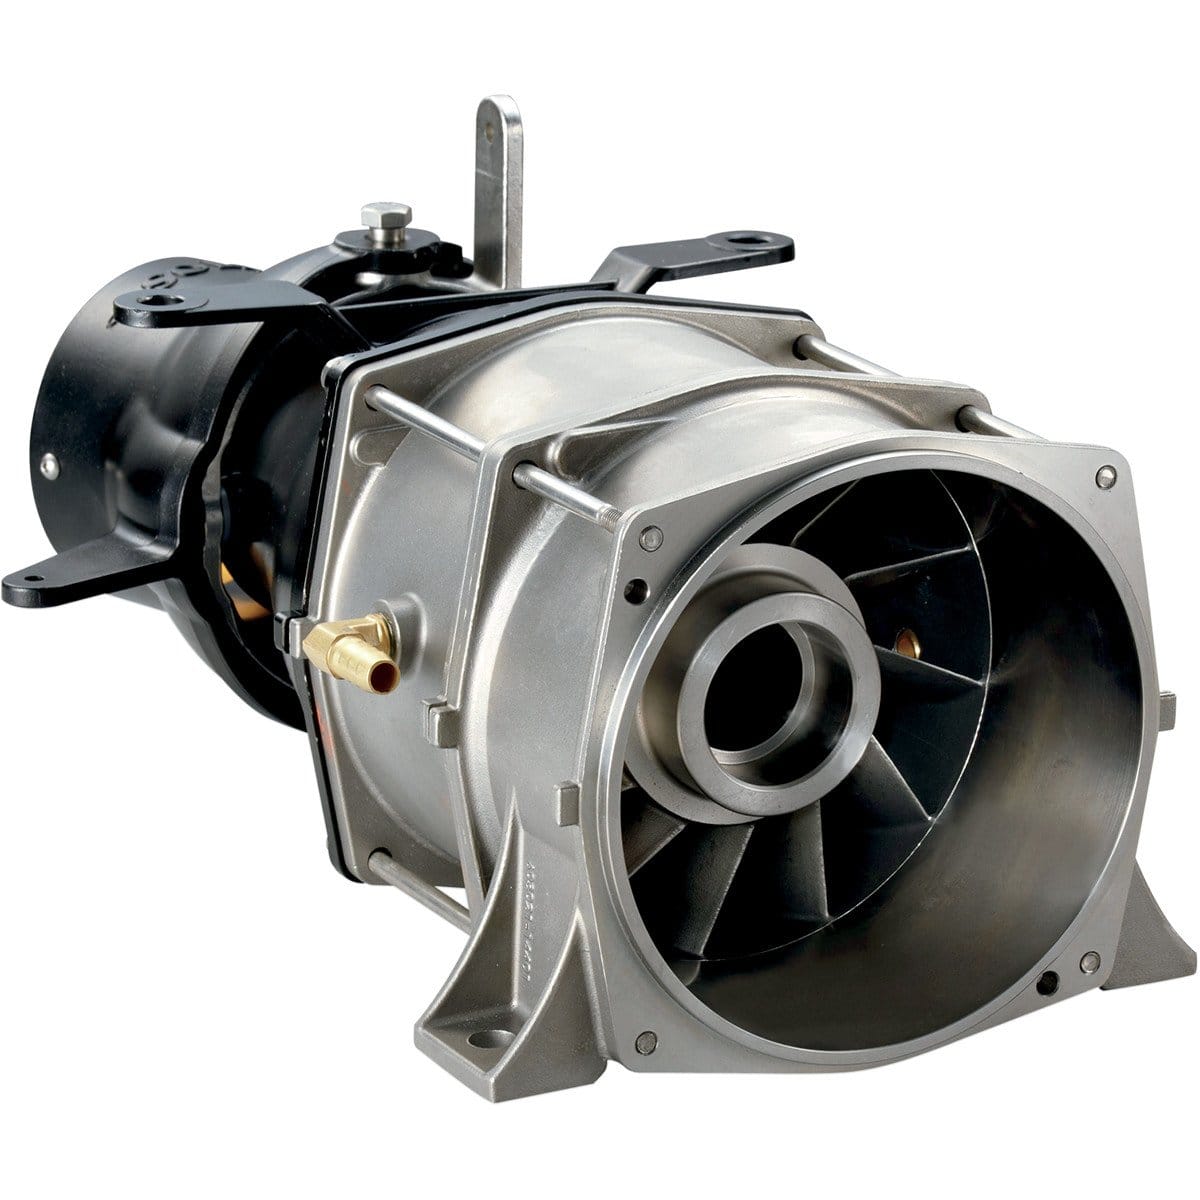 Turbine complète Magnum Pump SOLAS pour Yamaha Superjet 144mm -  YQS-PM-144/74T - Promo-jetski